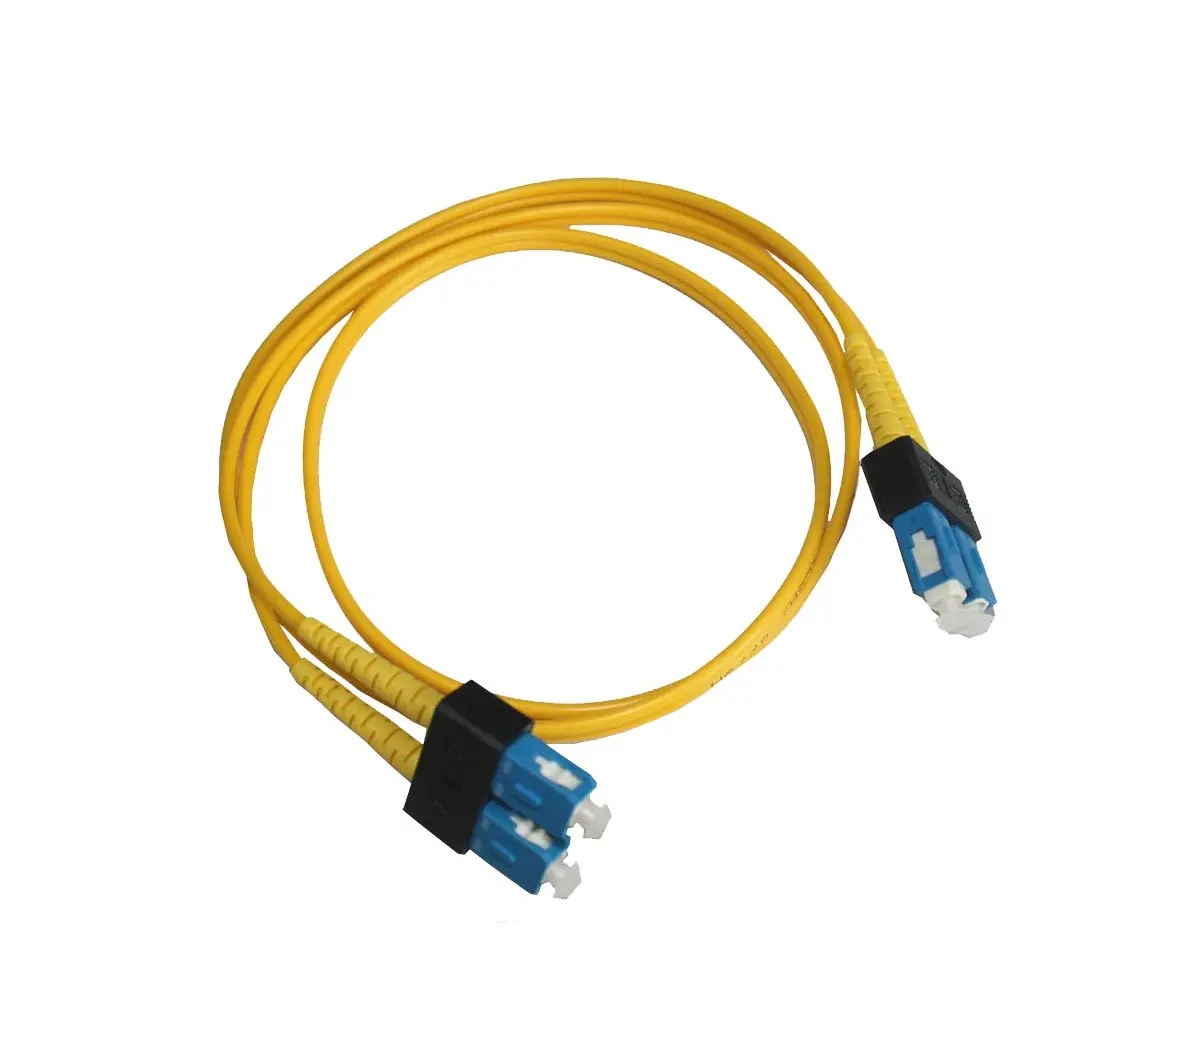 491028-001 HP Lc-lc Multi-mode Om3 Fibre Channel Cable